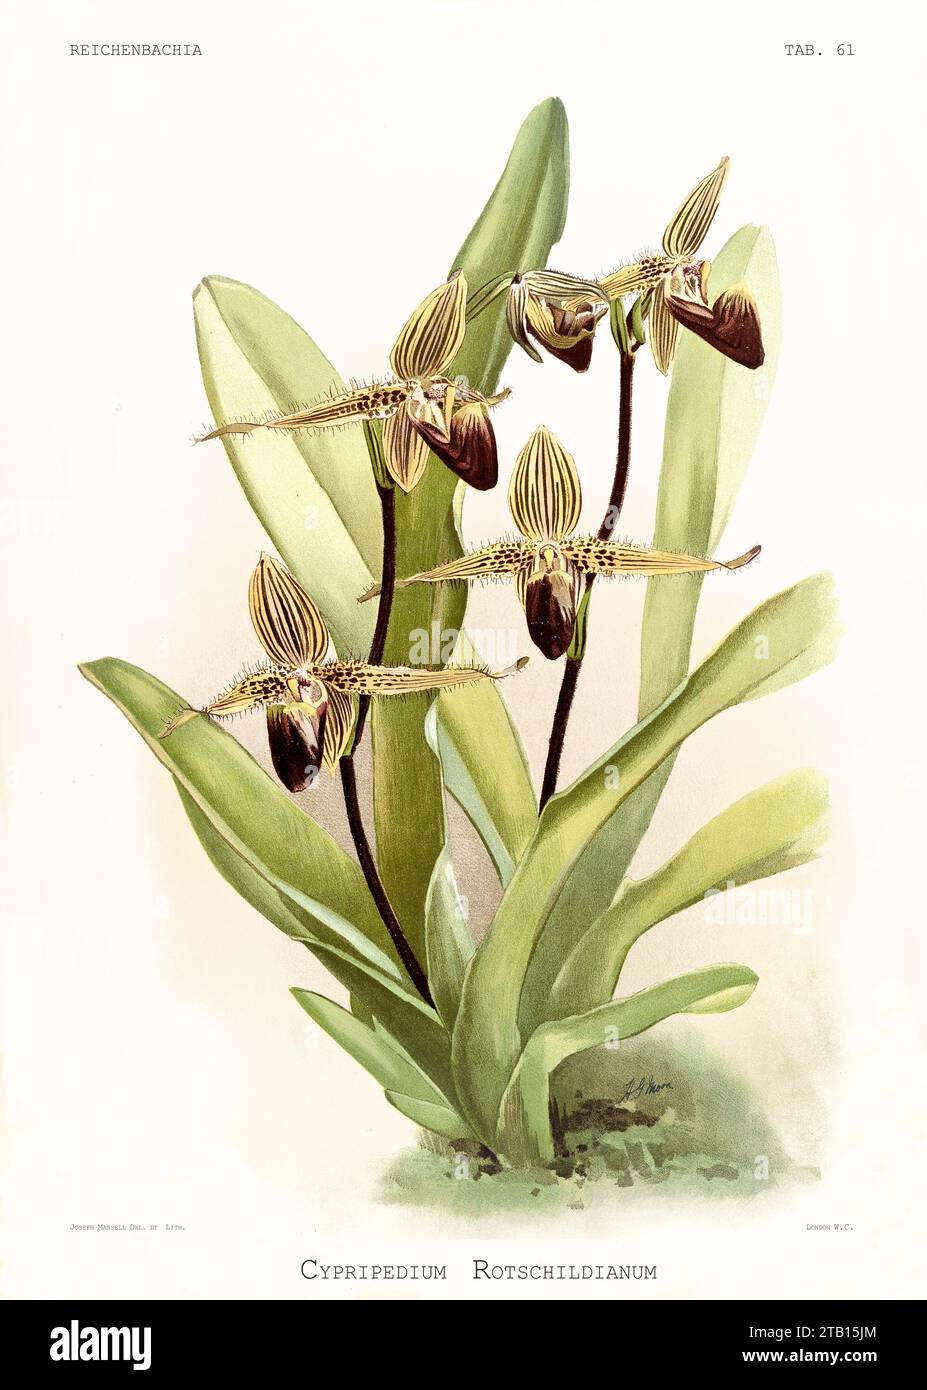 Vieille illustration de l'orchidée pantoufle de Rotschild (Paphiopedilum rostchildianum). Reichenbachia, de F. Sander. St. Albans, Royaume-Uni, 1888 - 1894 Banque D'Images